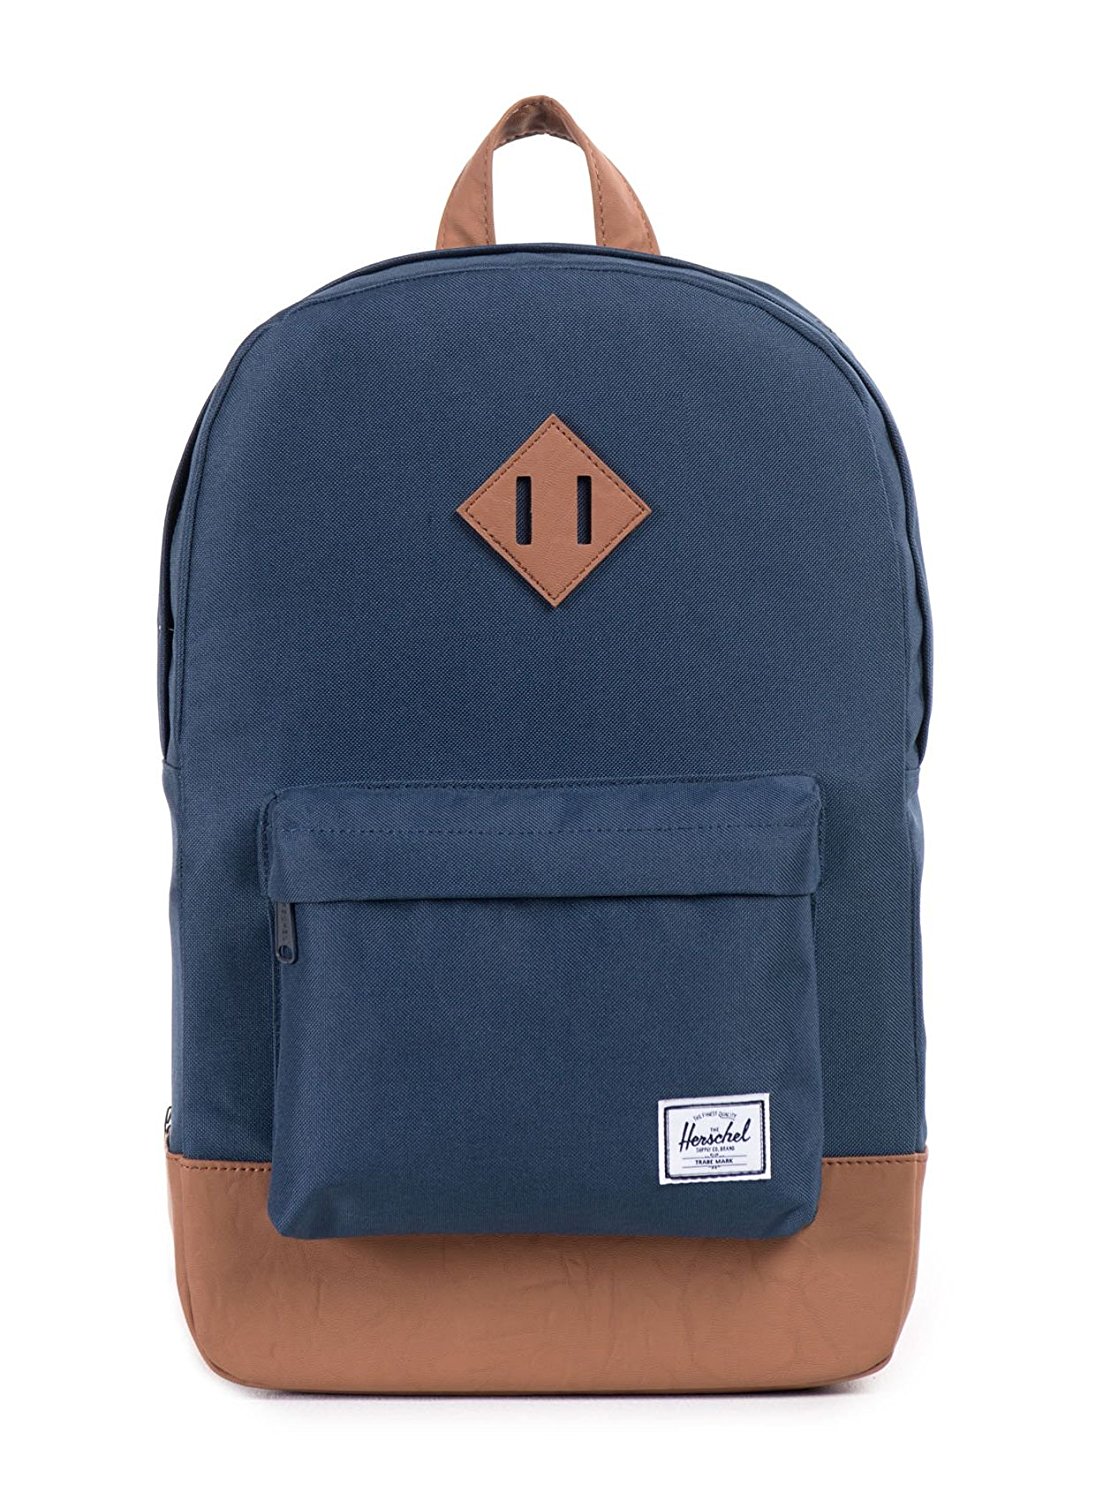 Best Backpacks Under $100 For School 